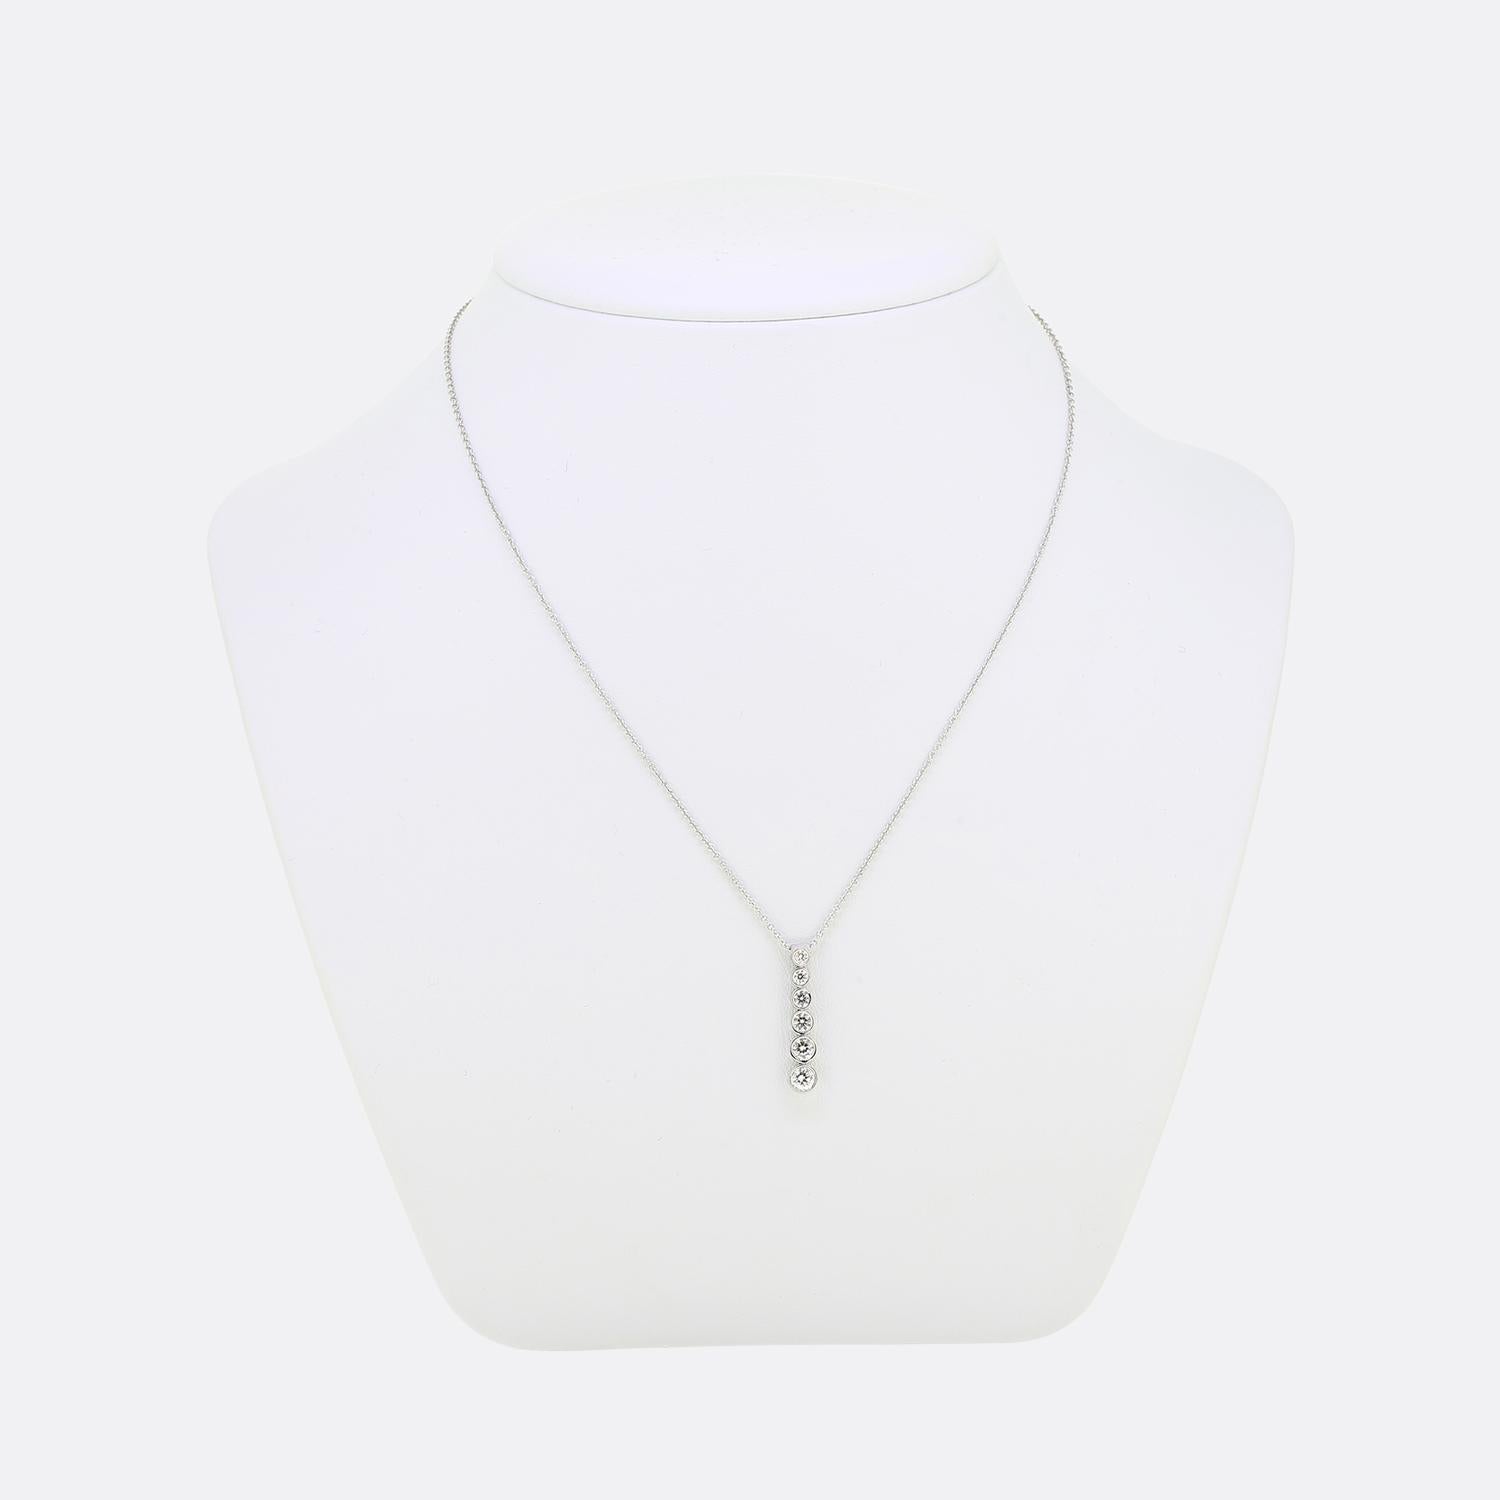 Nous avons ici un magnifique pendentif en diamant du créateur de bijoux de renommée mondiale, Tiffany & Co. Cette pièce, qui fait partie de la collection 